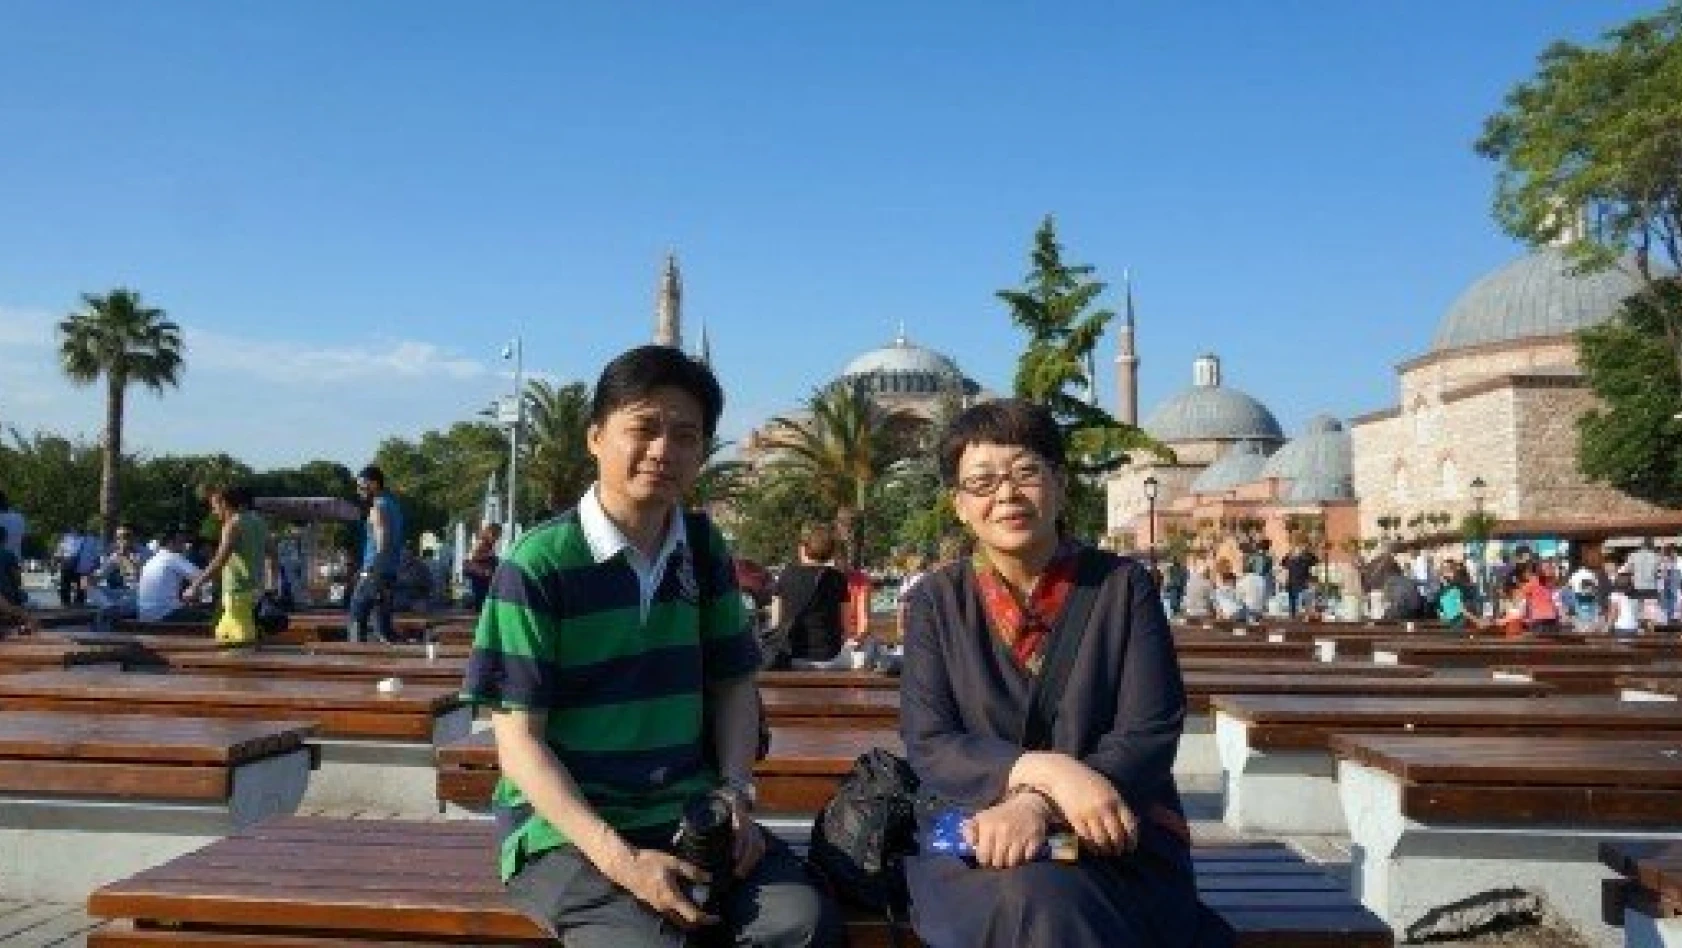 Çinli entelektüellerden Türkiye'ye Gezi Parkı övgüsü